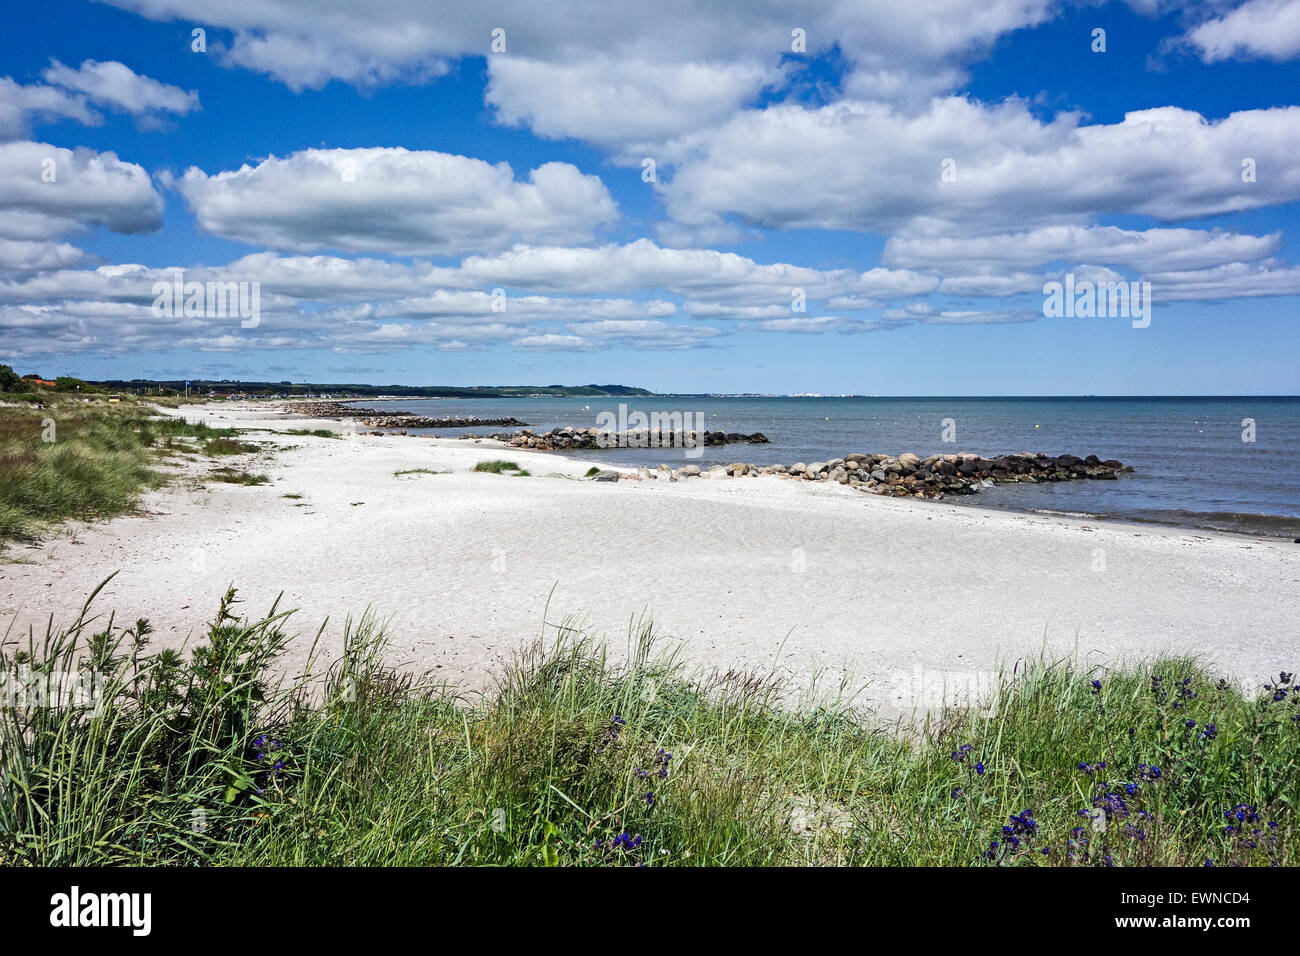 Der Strand nördlich von Sæby Hafen in Sæby Jütland Dänemark mit Steinen gelegt wie Maulwürfe oder Bollwerke um weitere Erosion zu verhindern. Stockfoto